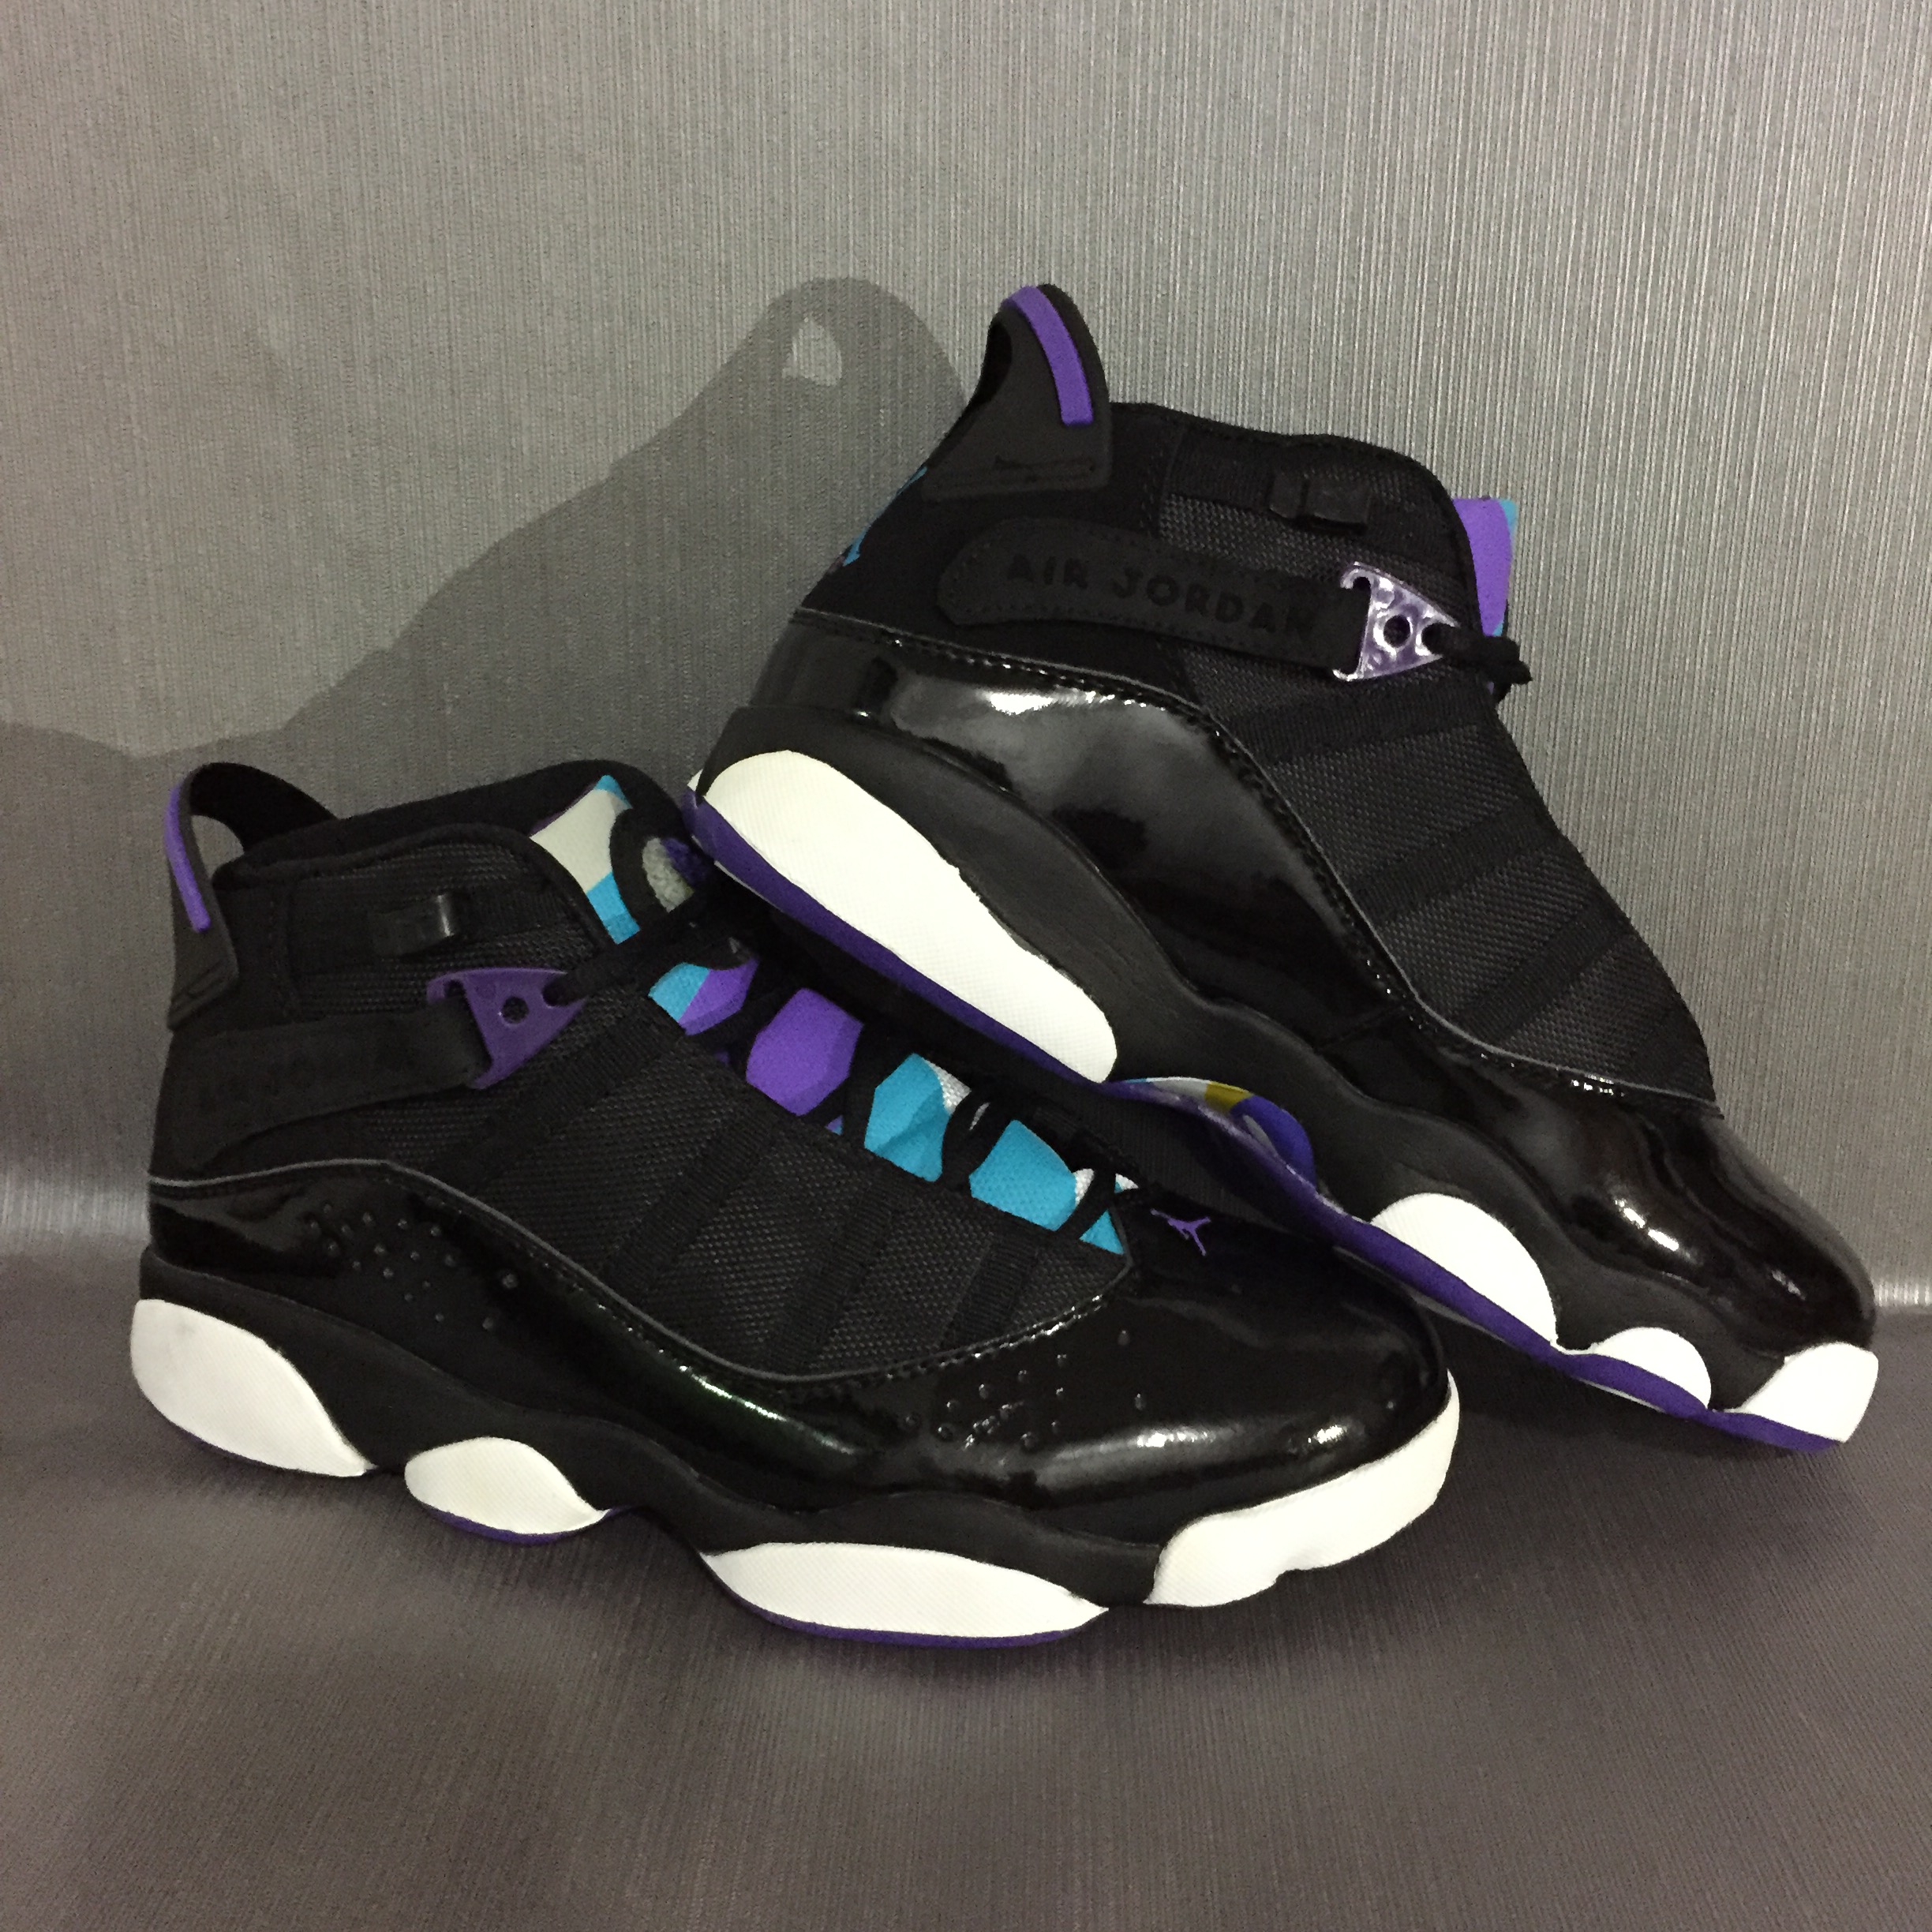 New Jordan 6 Rings Black Purple White Shoes